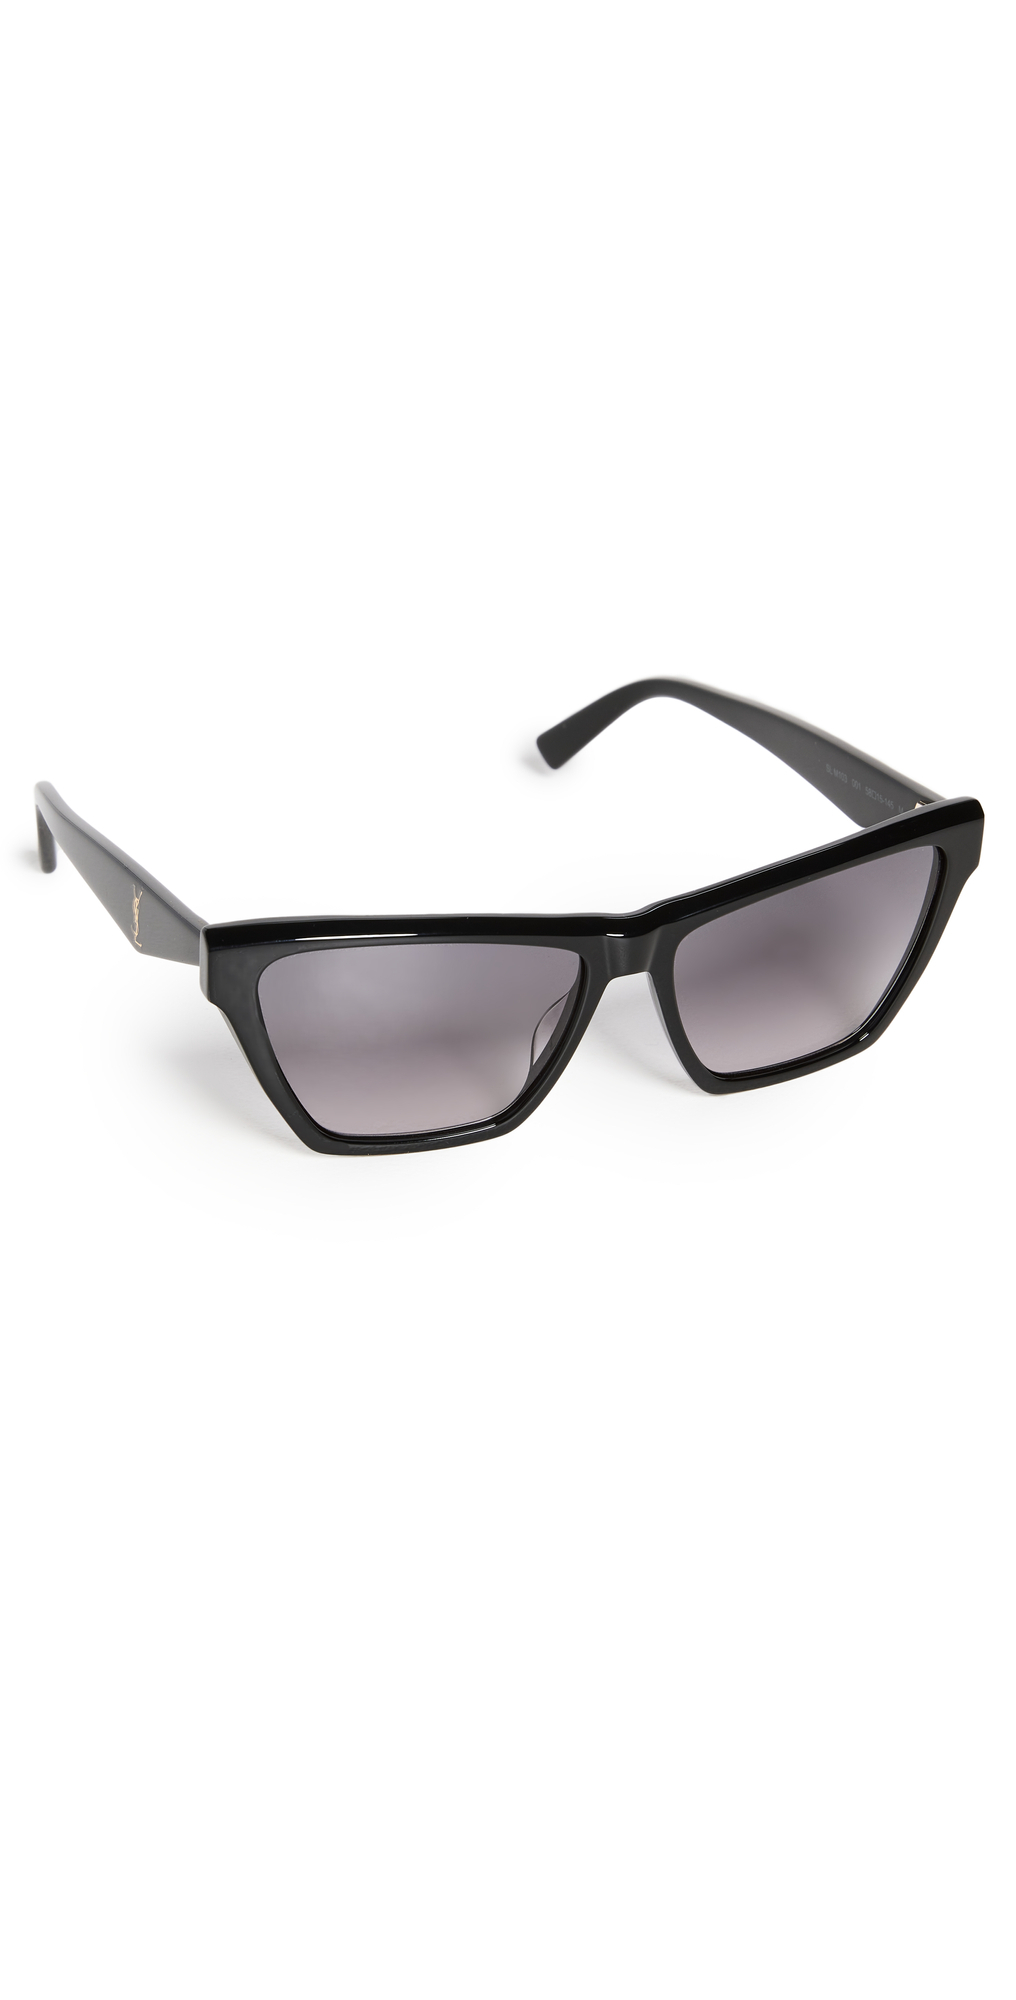 Saint Laurent SL M103 Sunglasses in black / grey